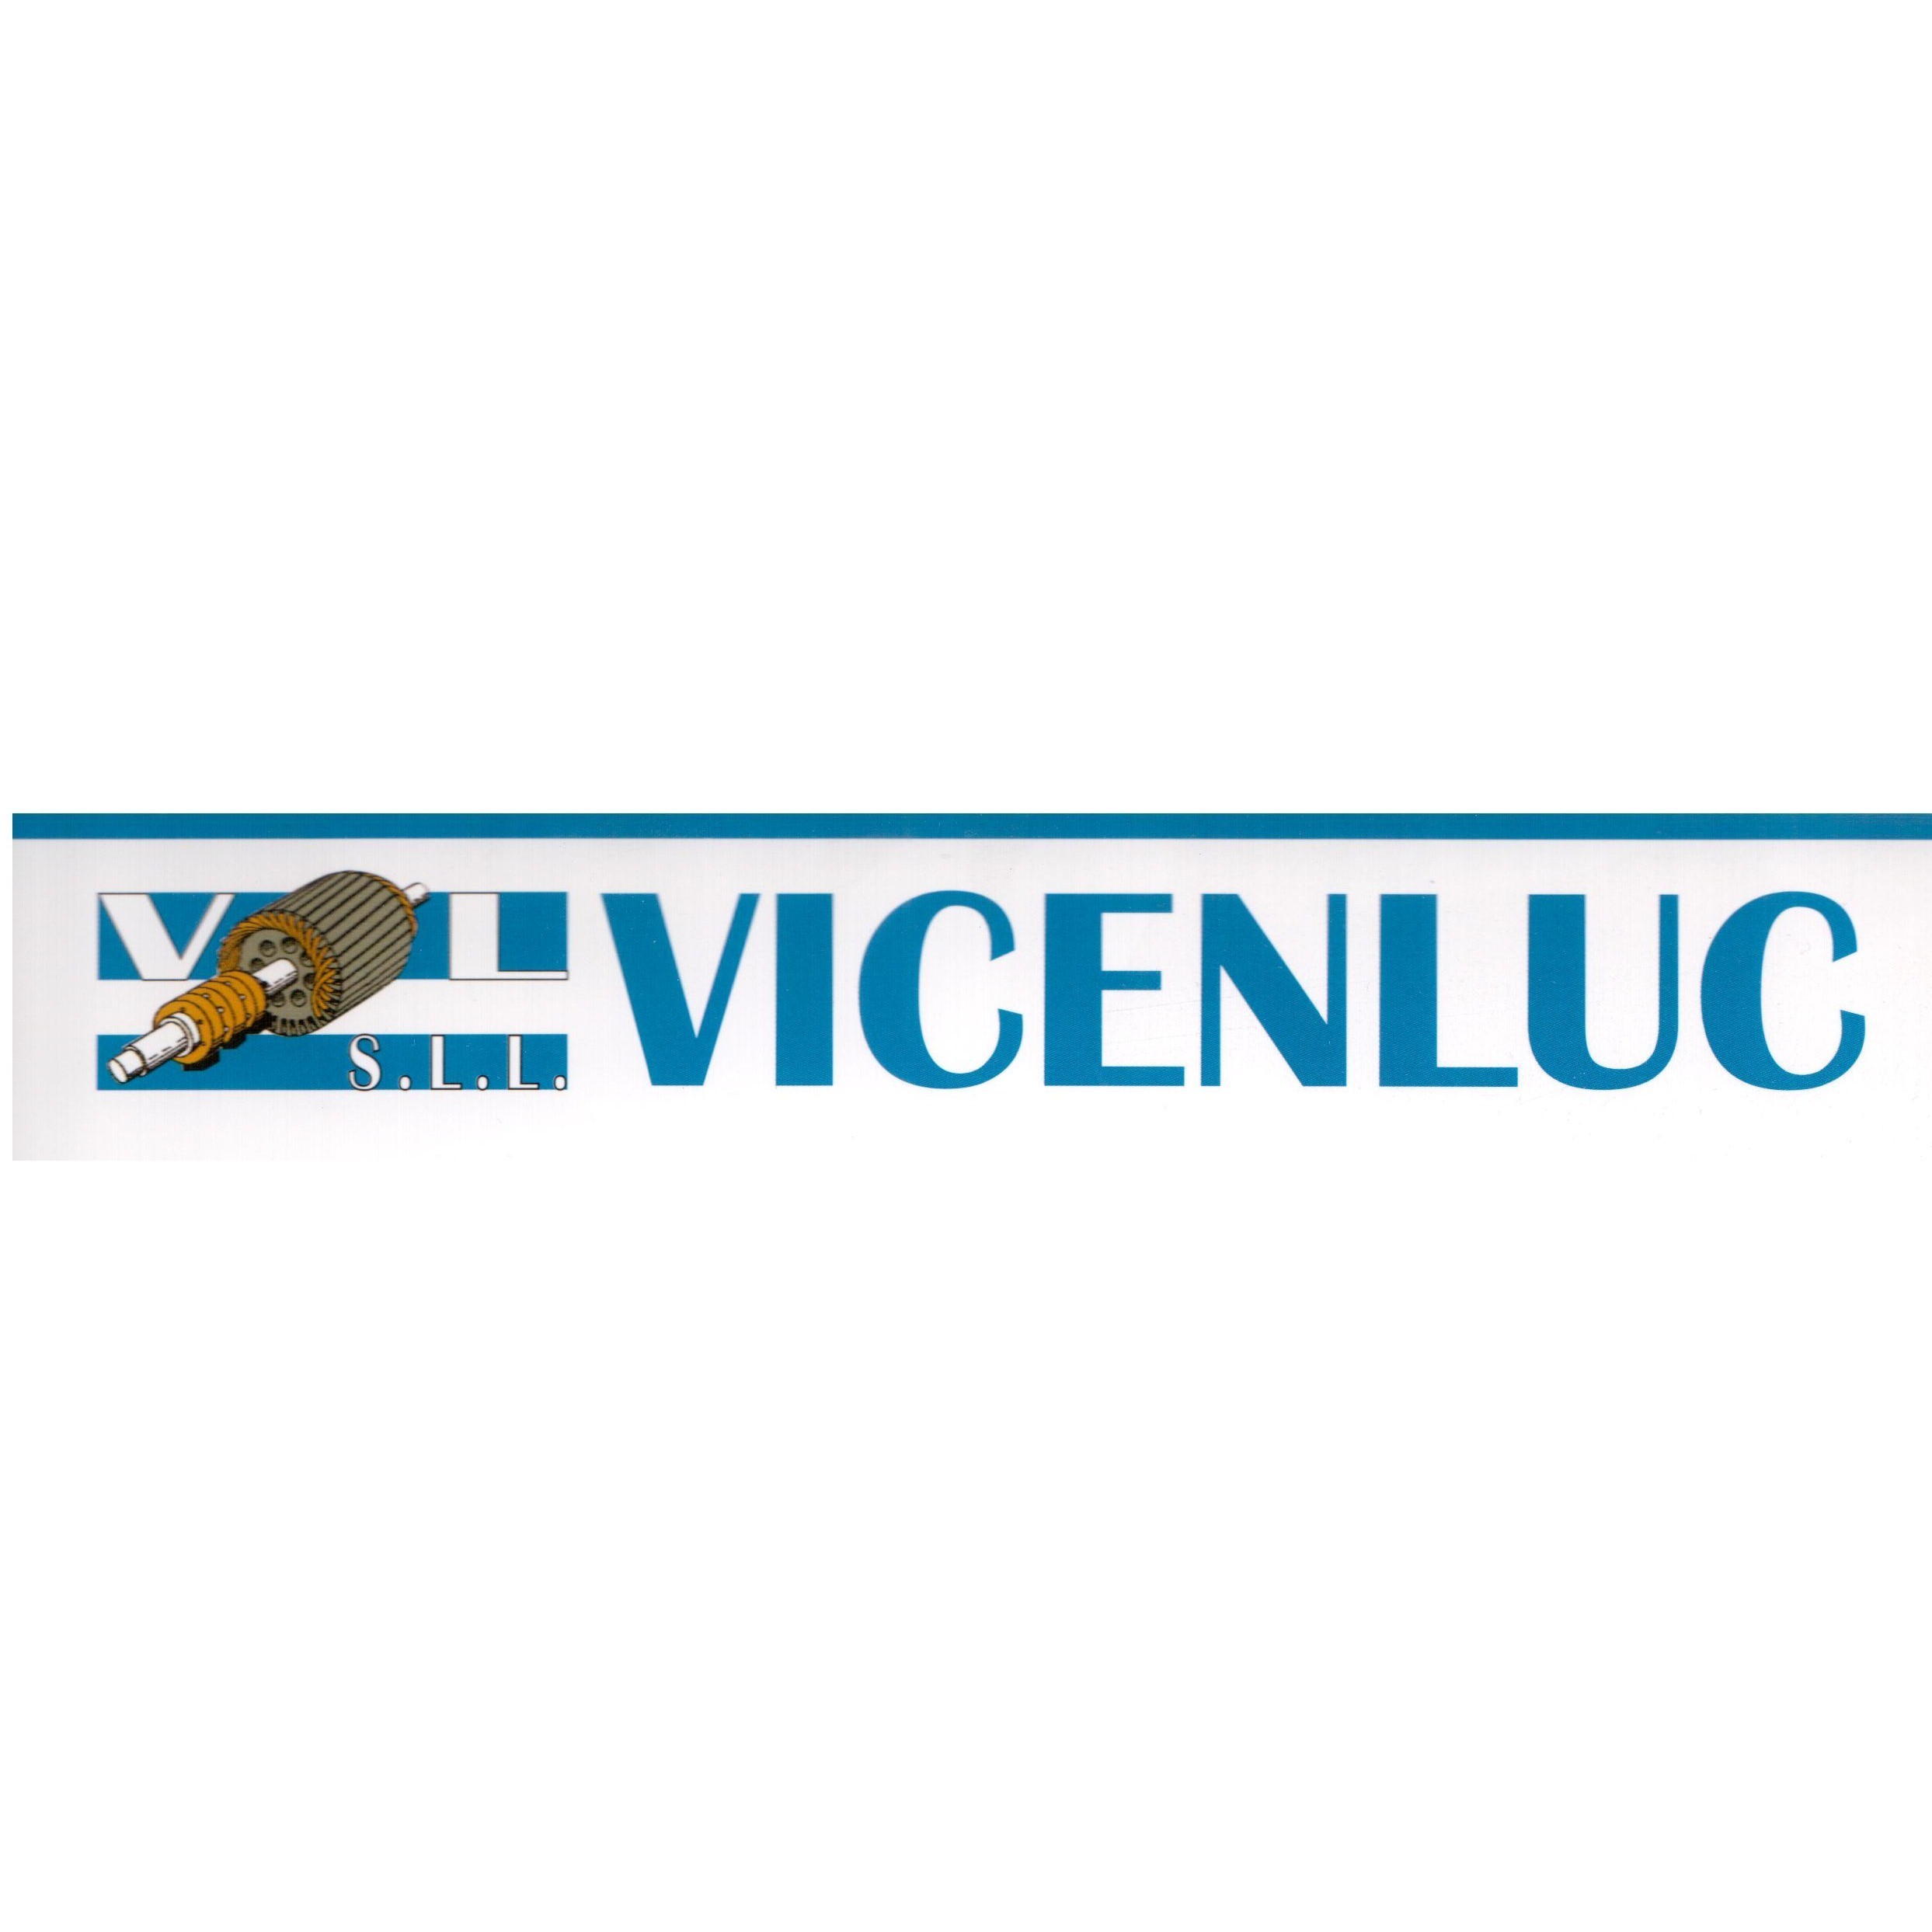 Vicenluc S L L - Machining Manufacturer - Jerez de la Frontera - 956 34 16 31 Spain | ShowMeLocal.com